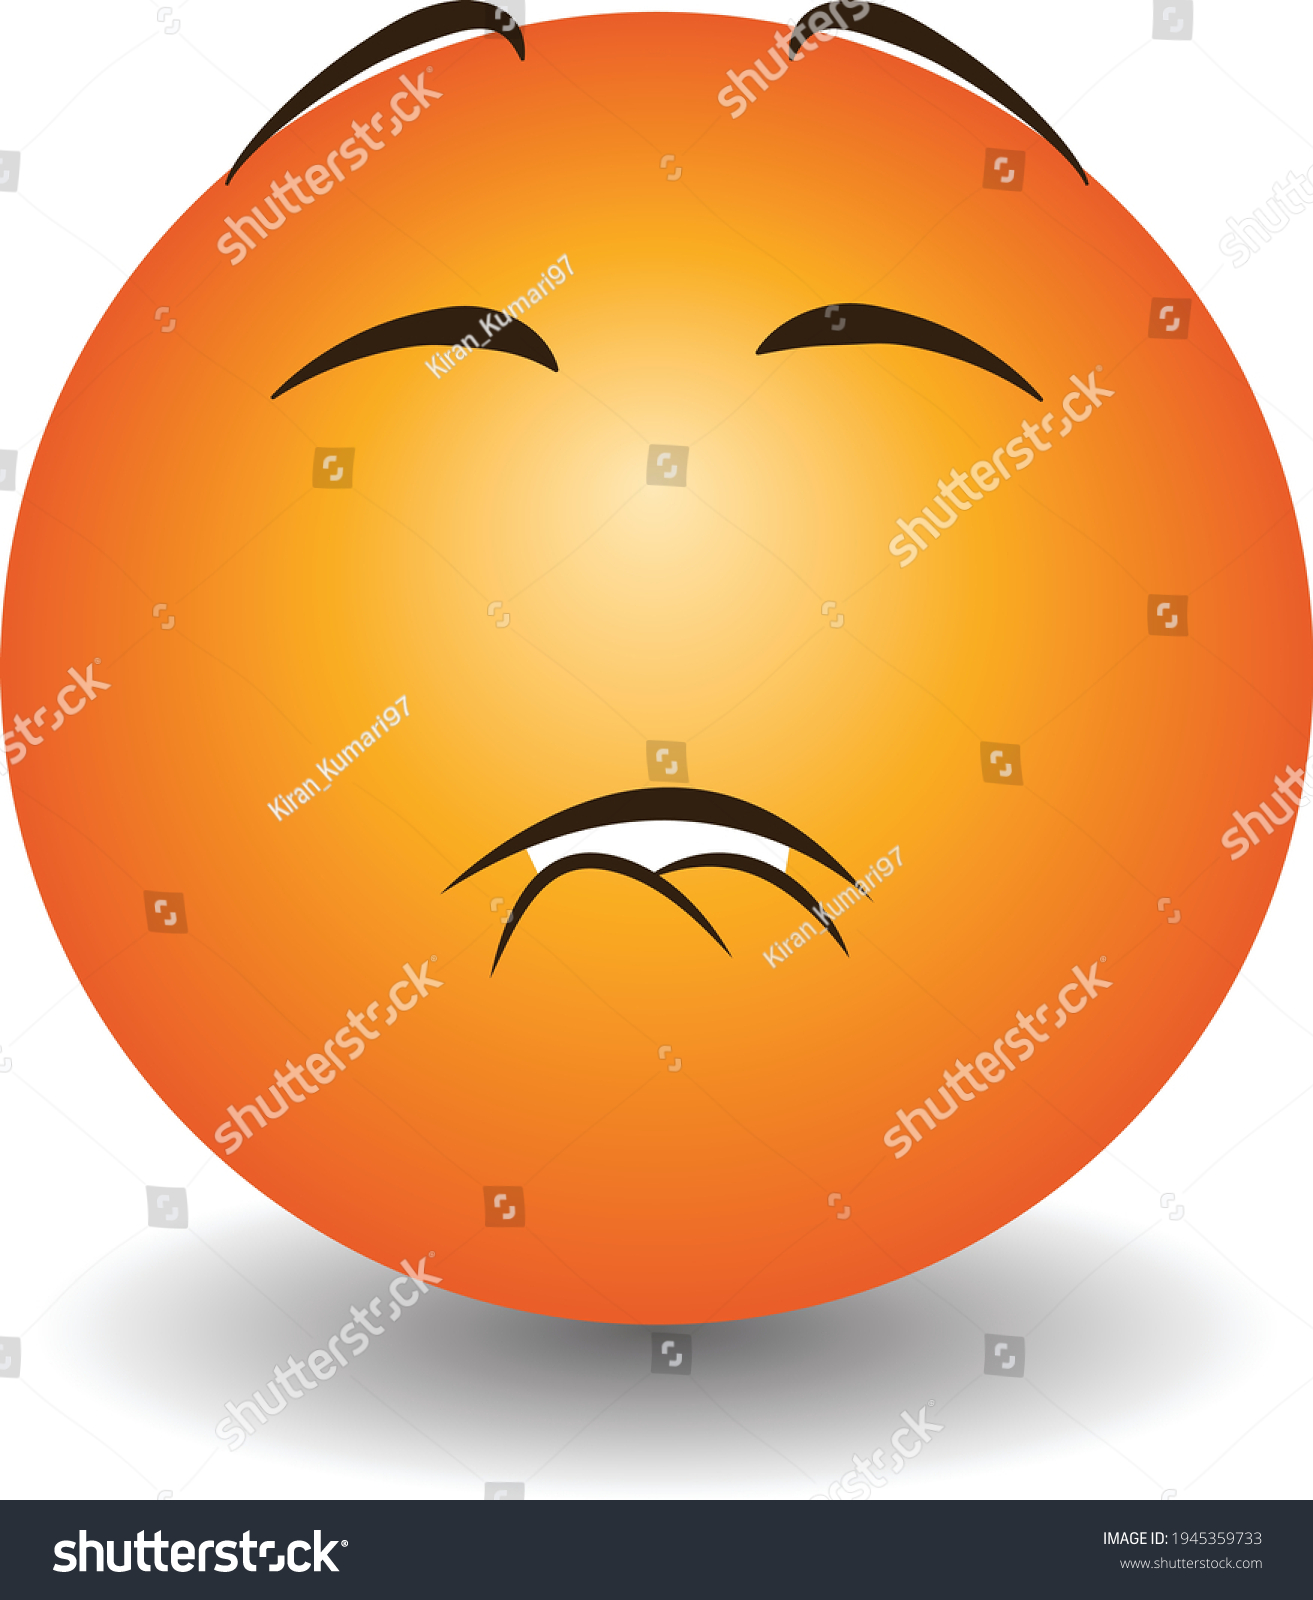 Bite Lip Emoji Raised Eyebrow: стоковая векторная графика (без лицензионных...